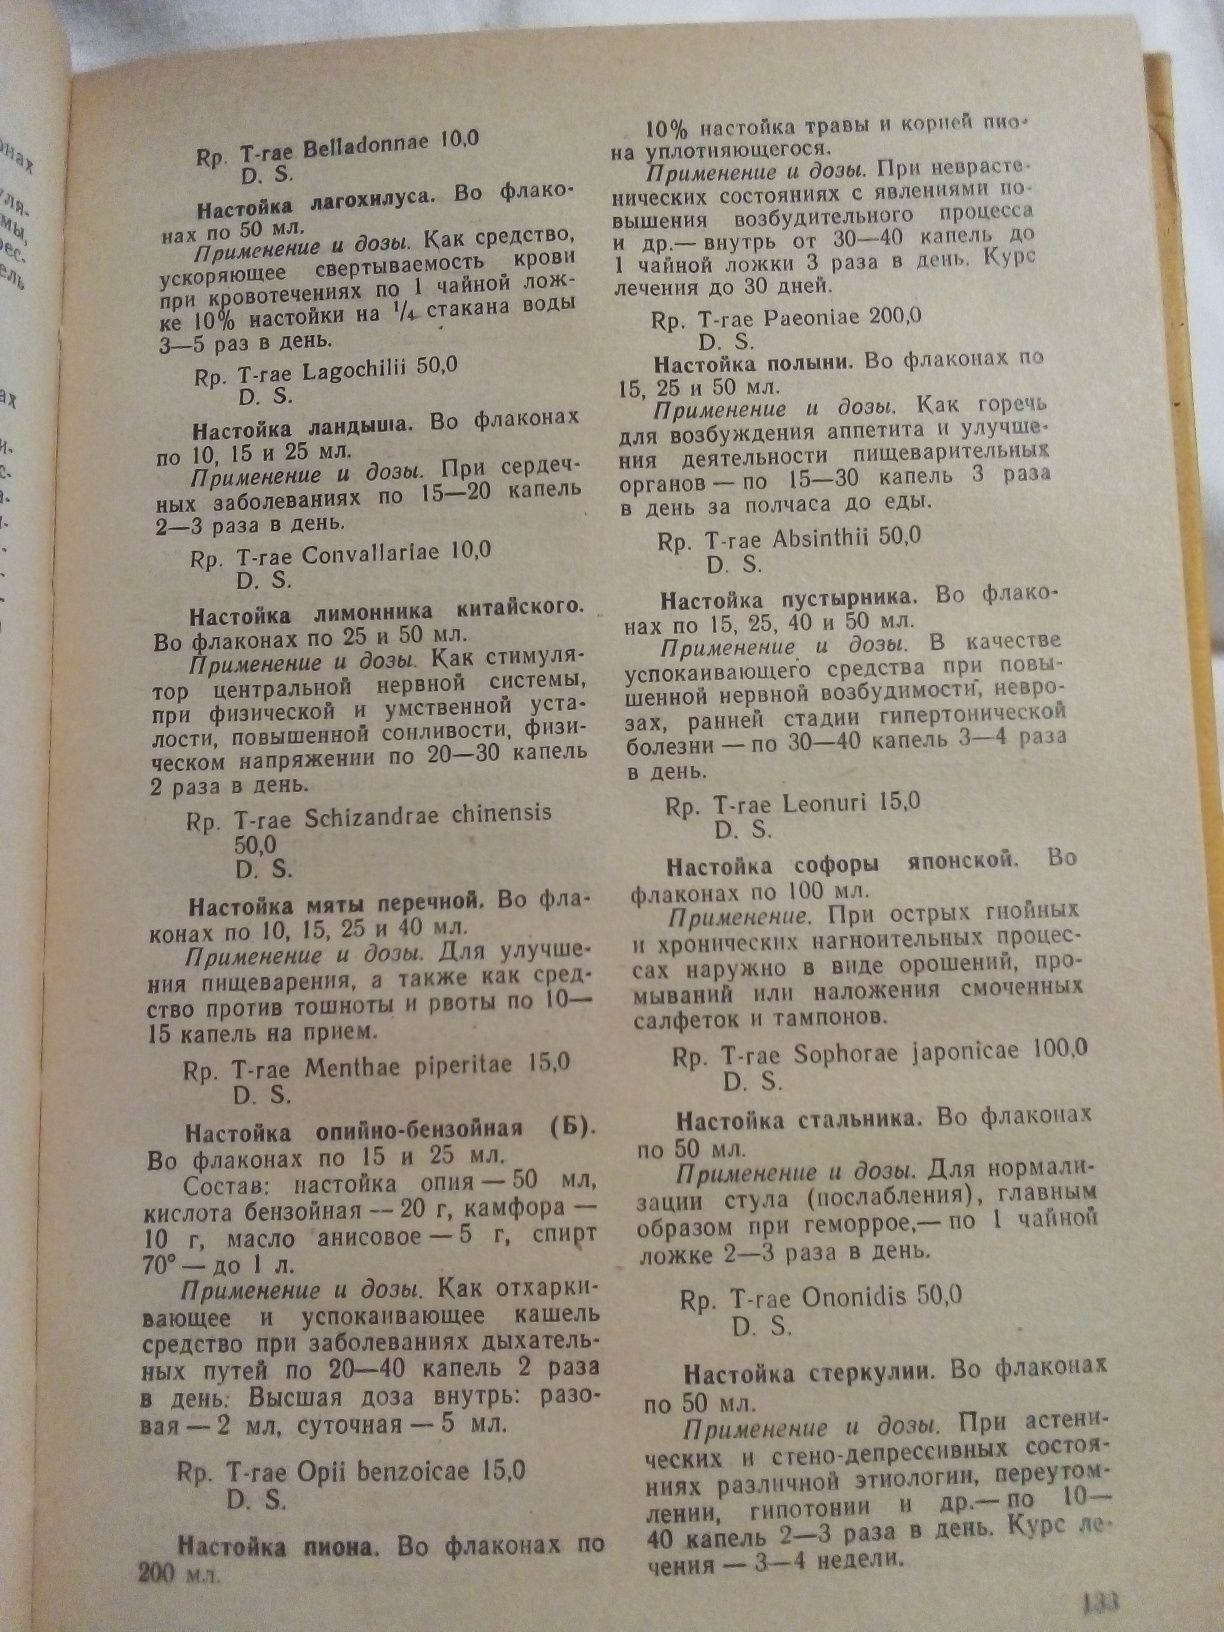 Книга Е. В. Дарабан "Готовые Лекарственные  средства" 1974 год.